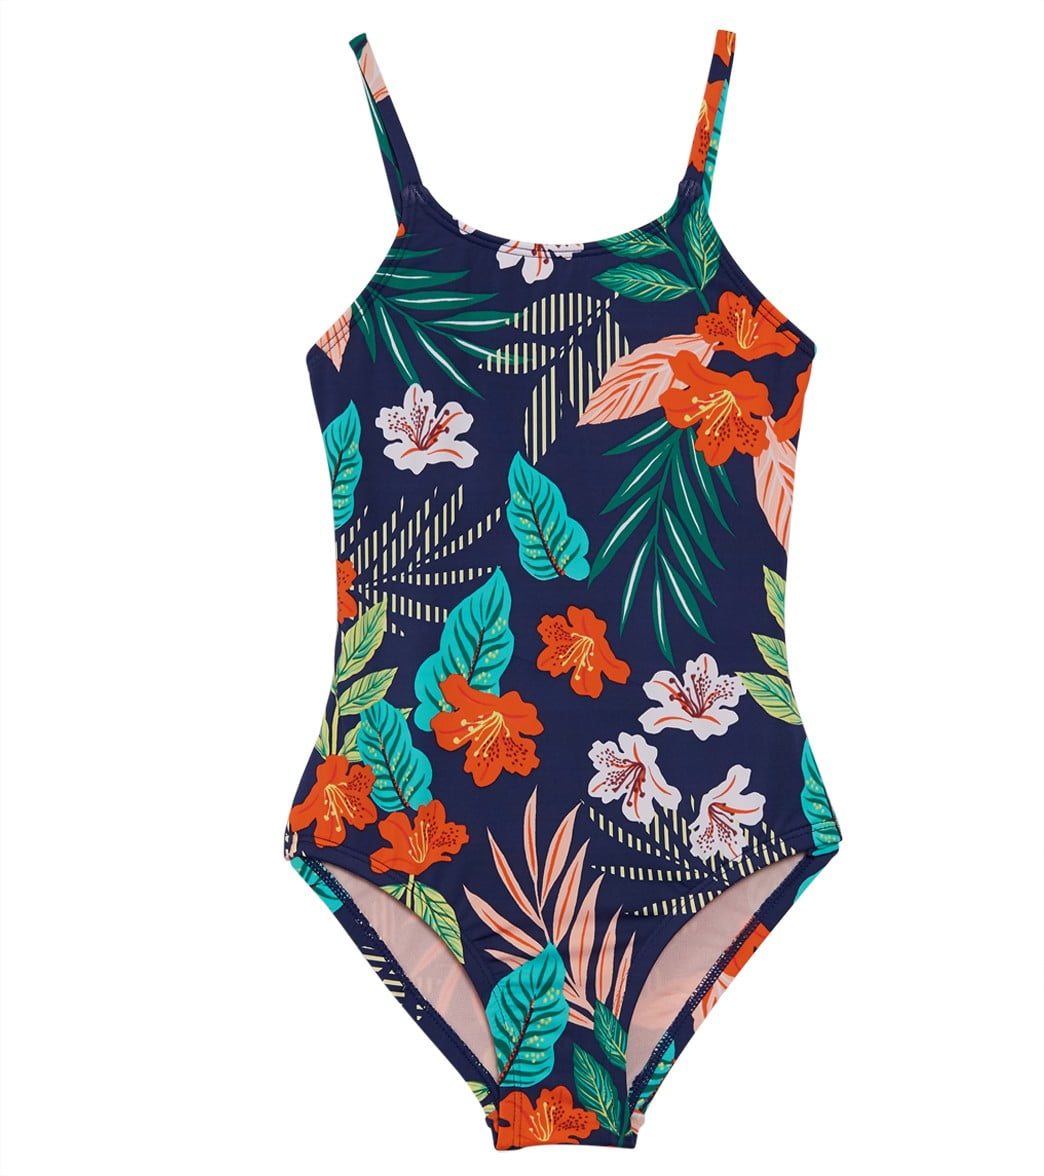 Hobie - Girls Swimwear Floral-Print One-Piece Swimsuit 10 - Walmart.com ...